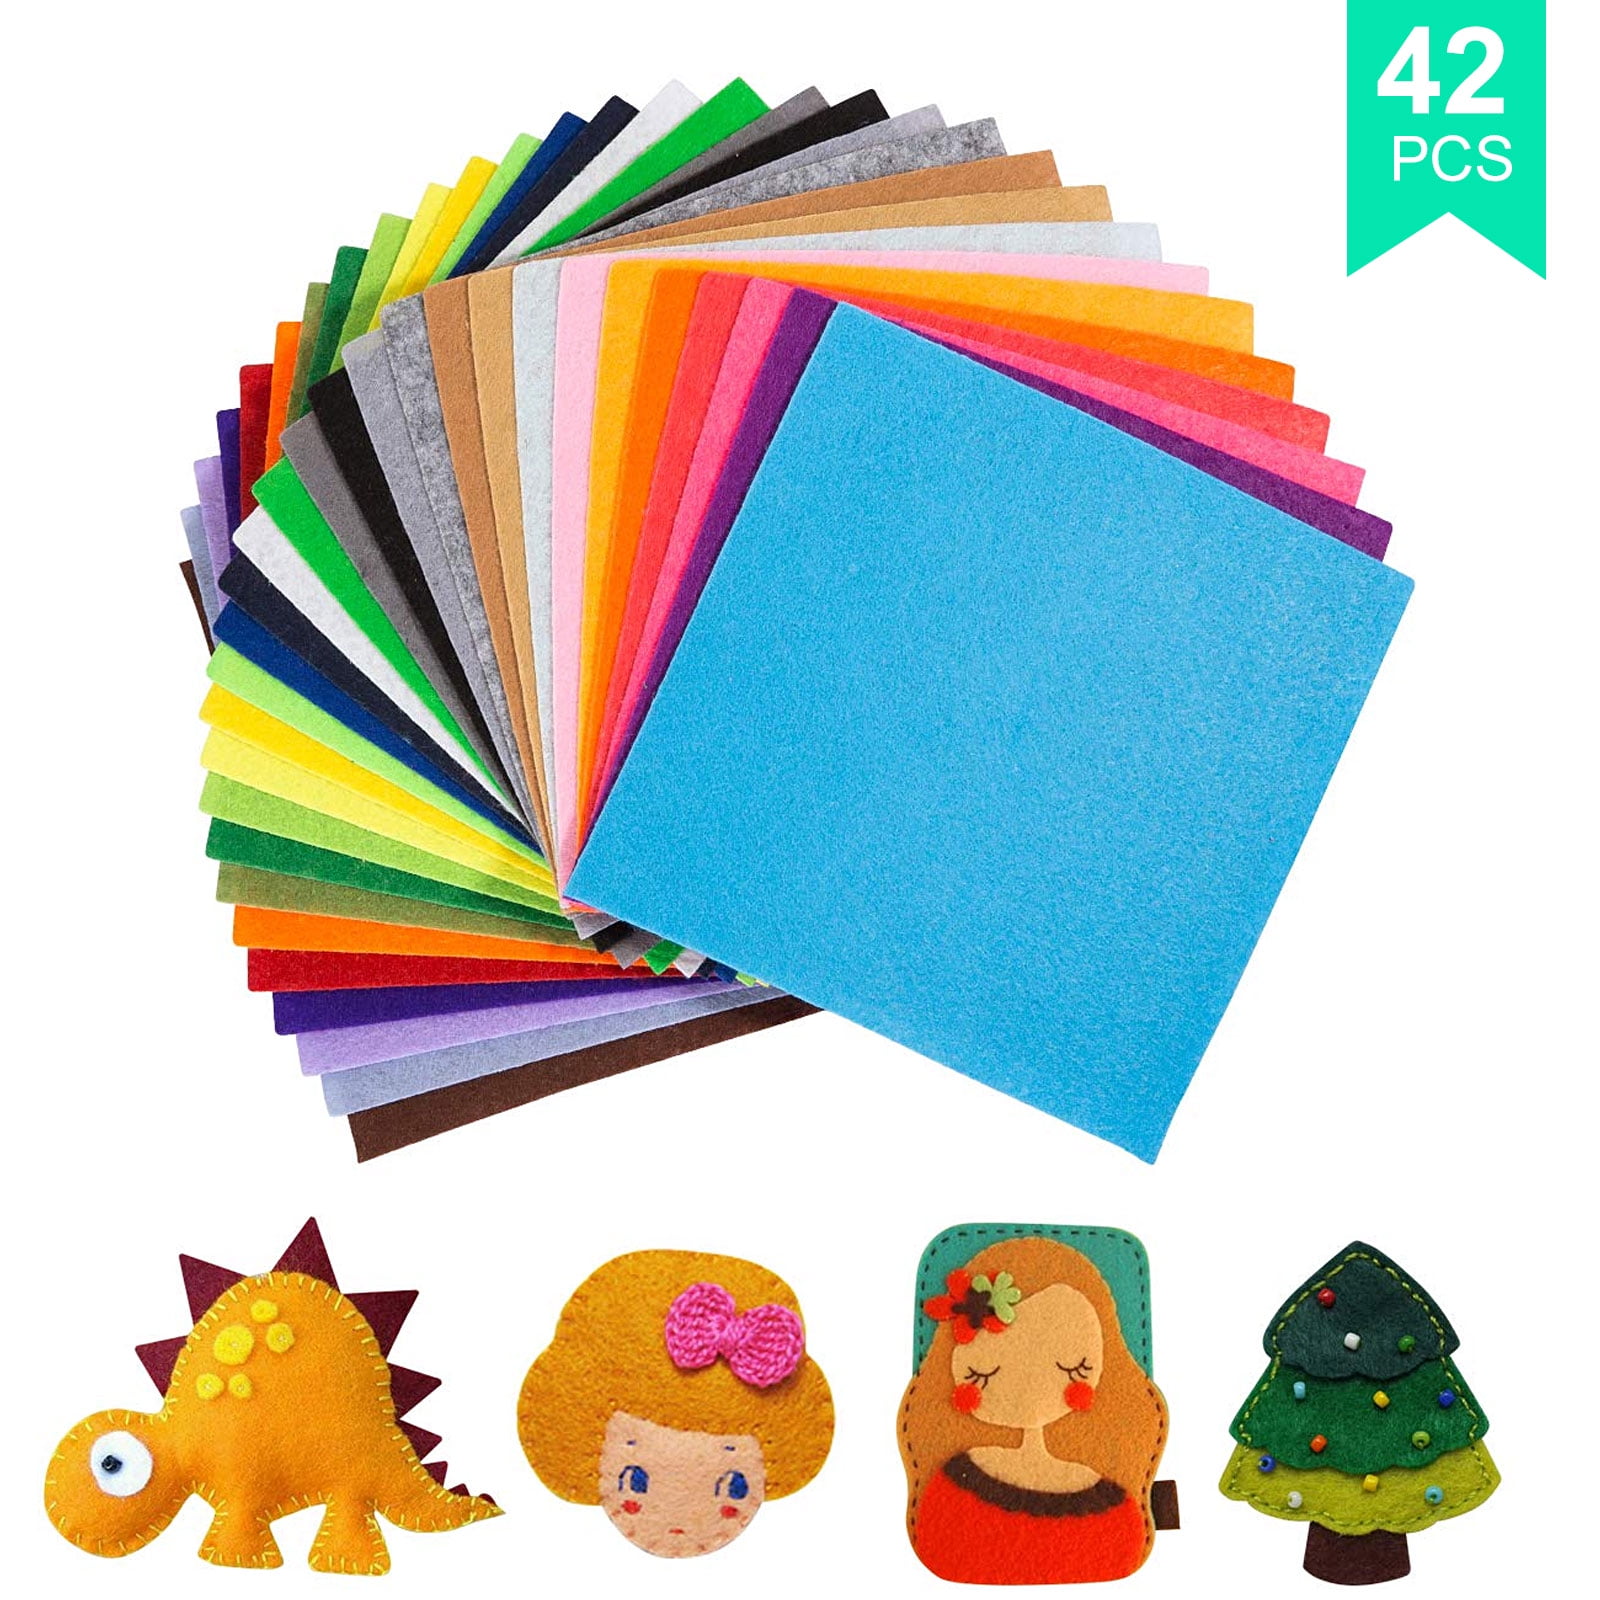 15 x 15 cm flic-flac 54pcs Felt Fabric Sheet Assorted Color Felt Pack DIY Craft Squares Nonwoven